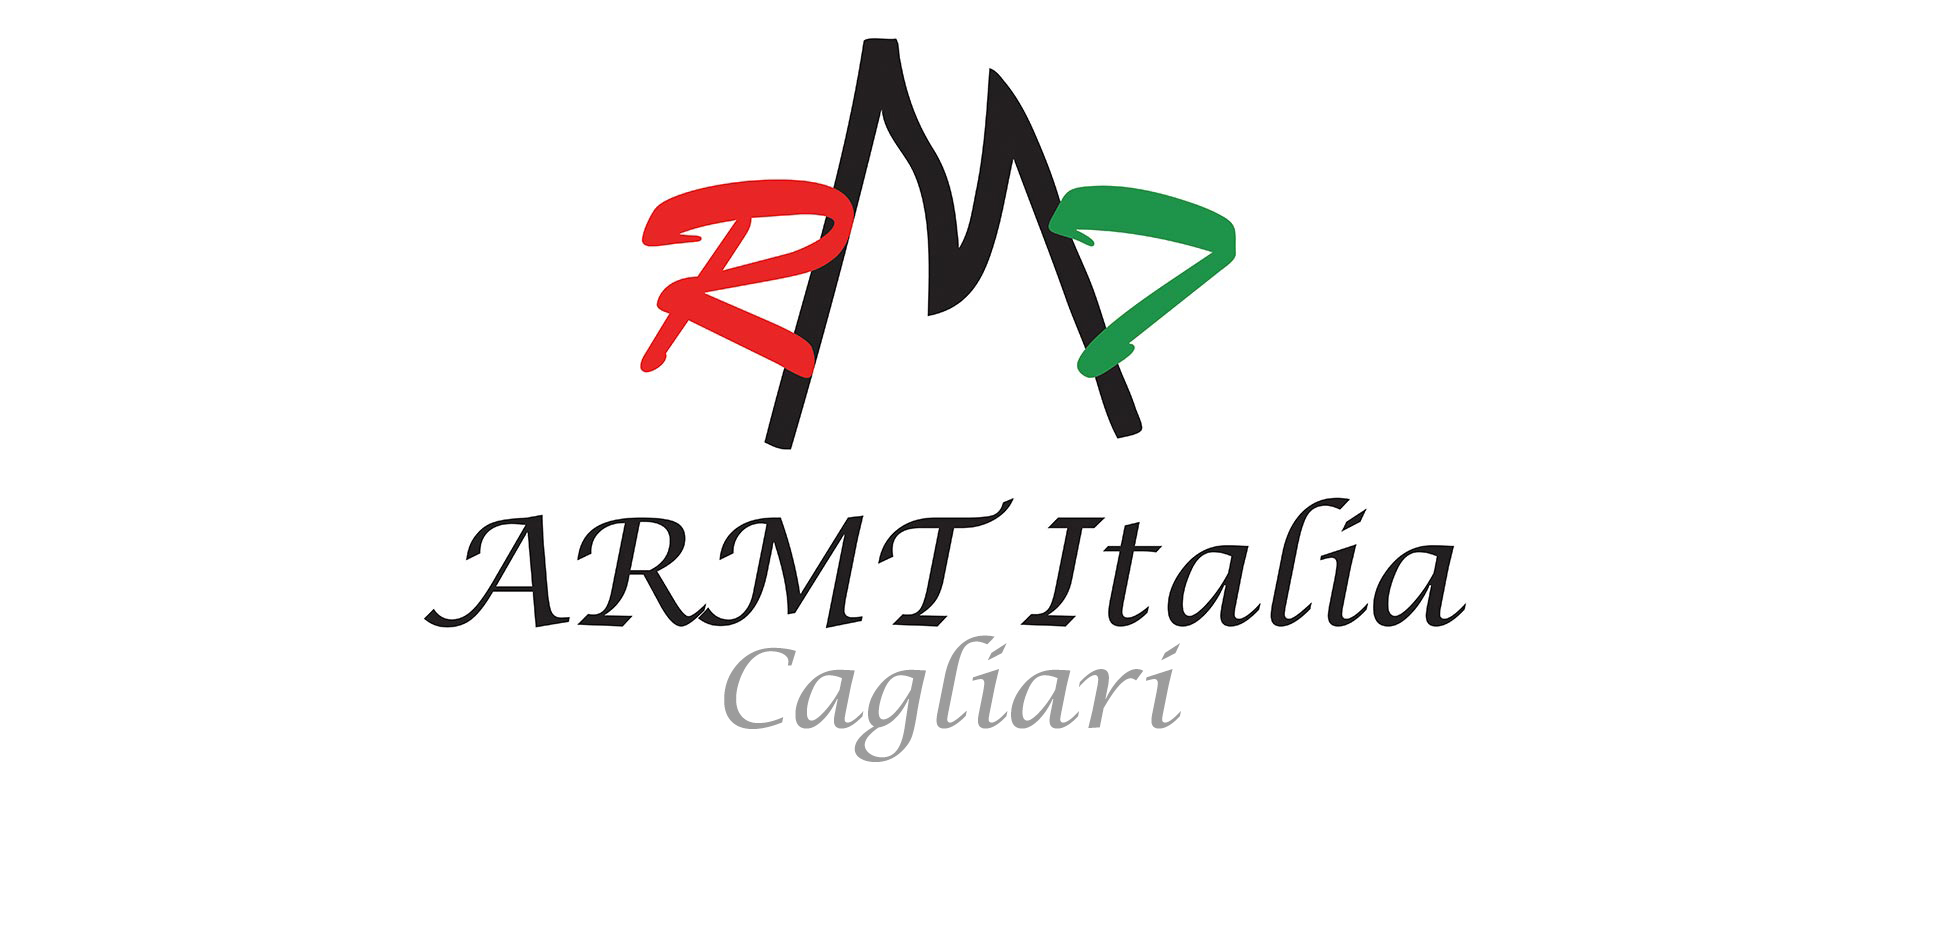 ARMT Italia (Cagliari)